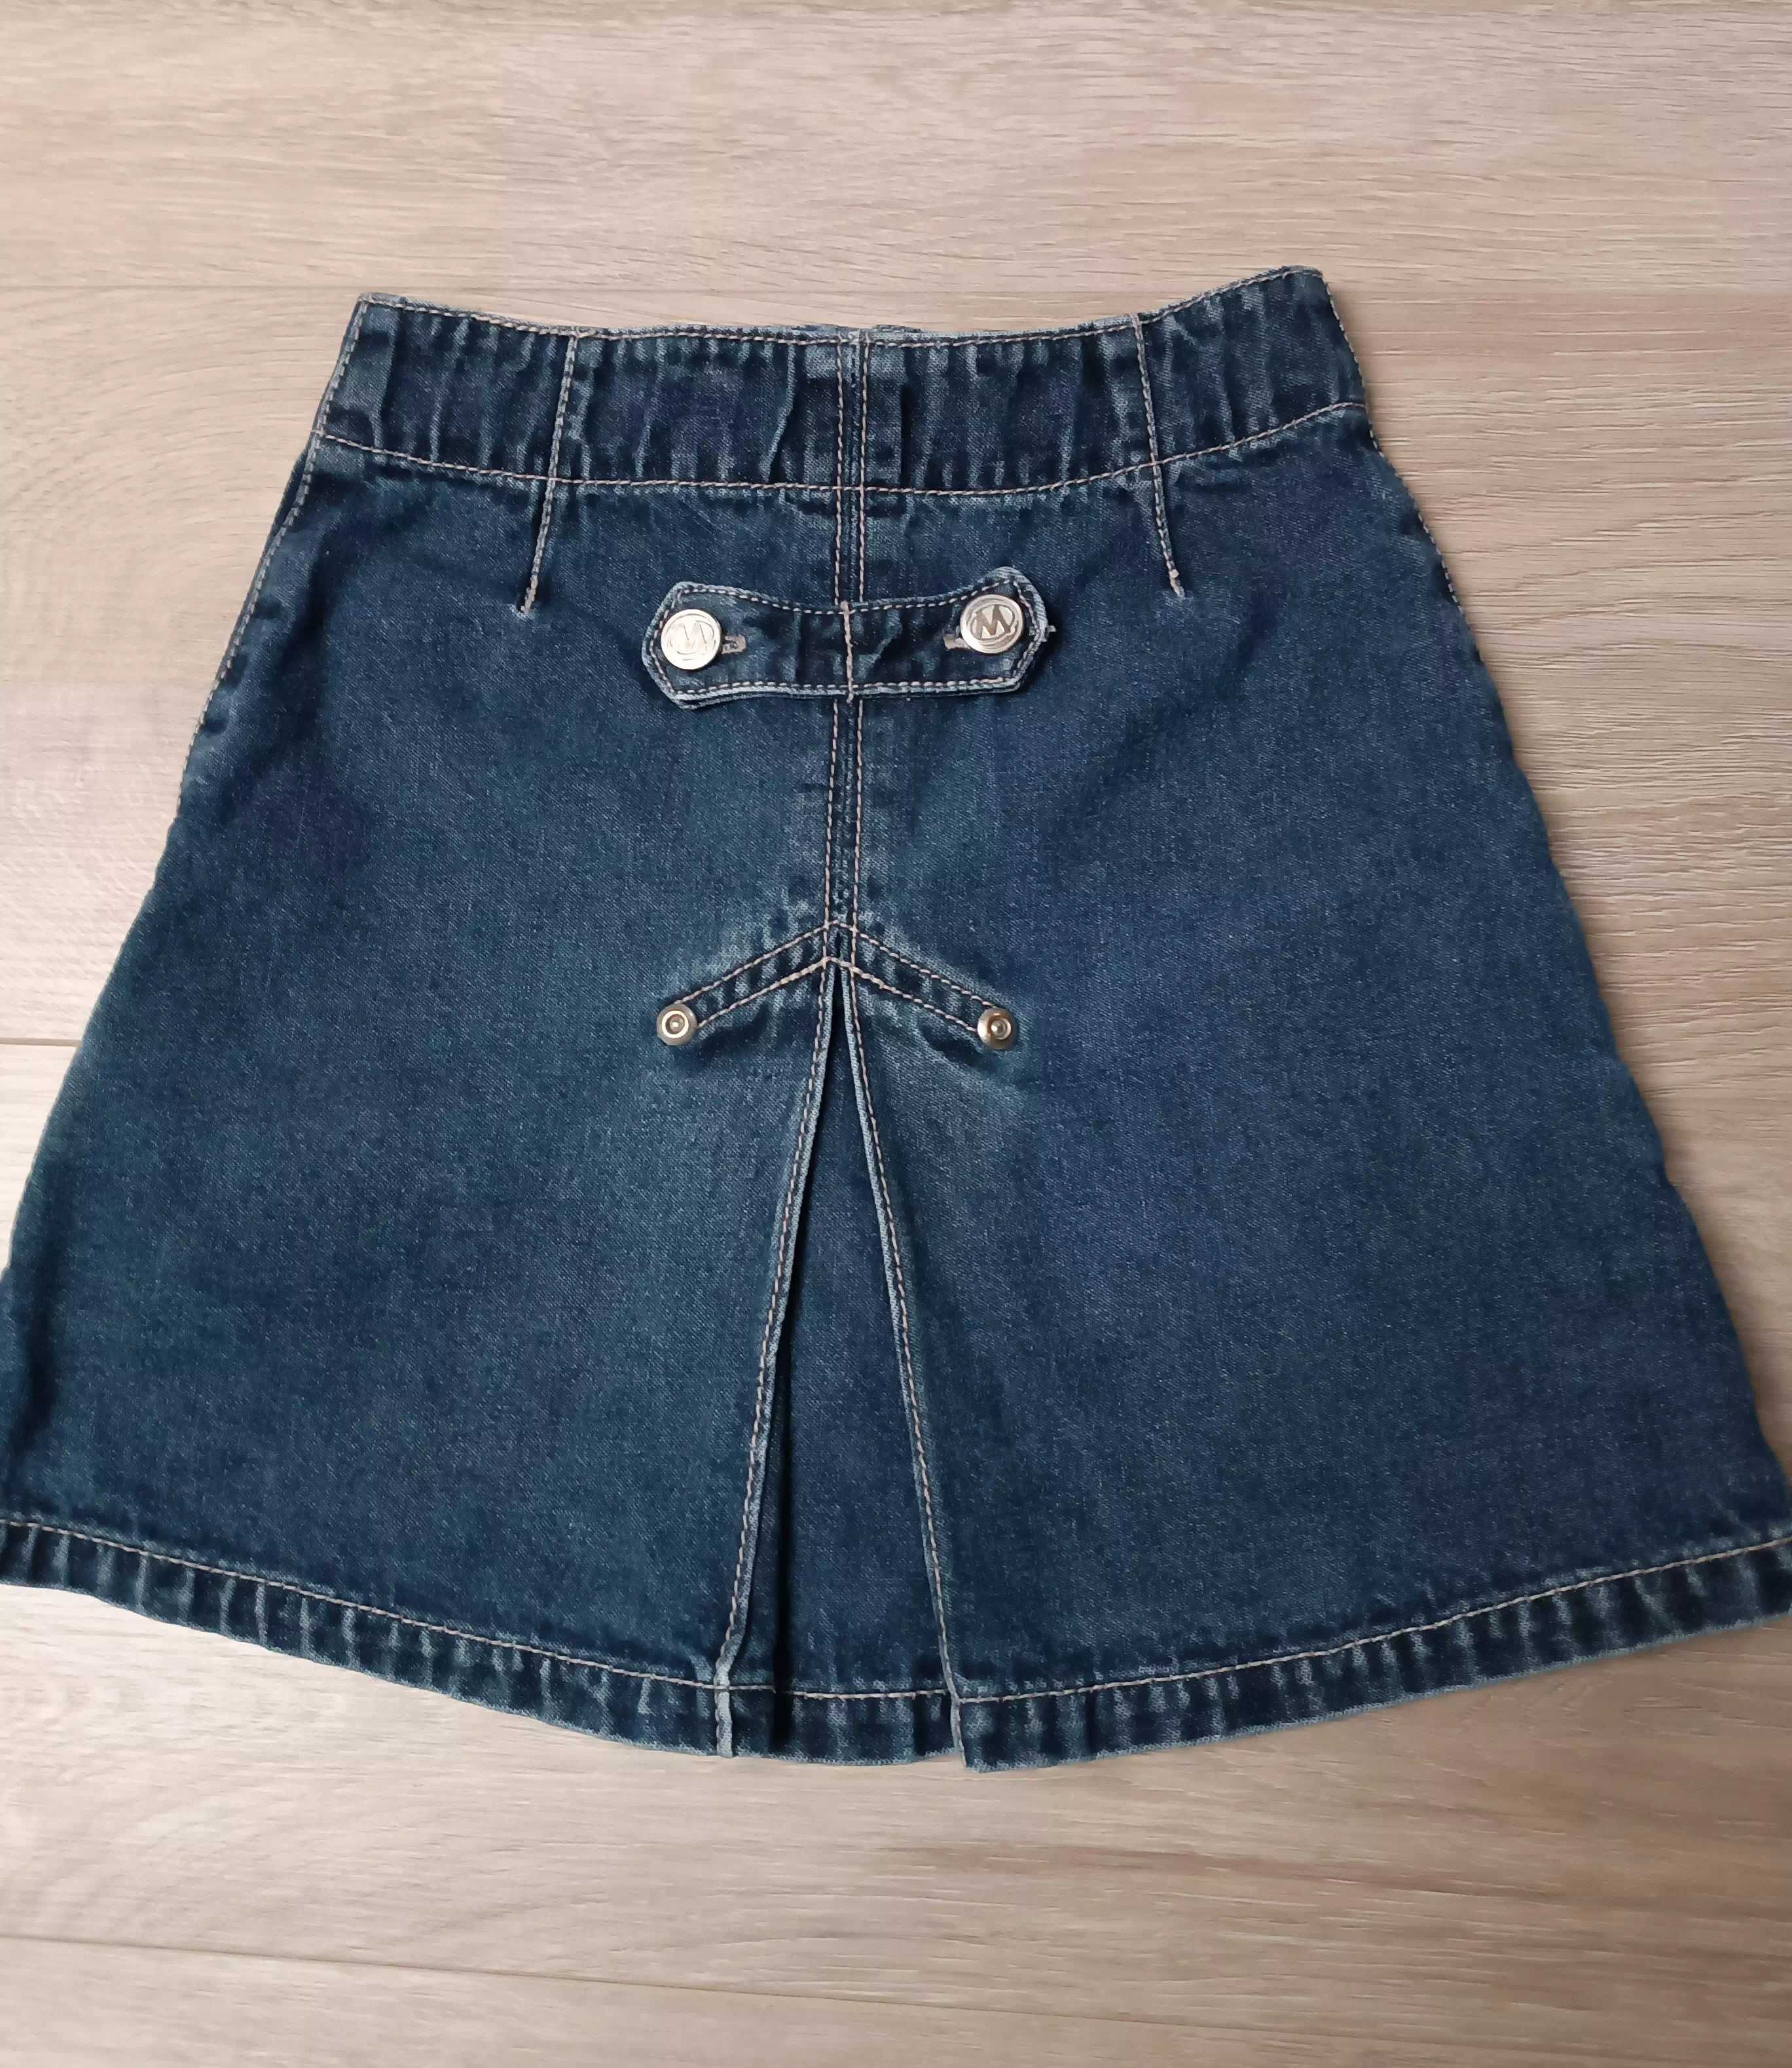 Spódniczka granatowy jeans suwaki kieszonki 'Me too' 98